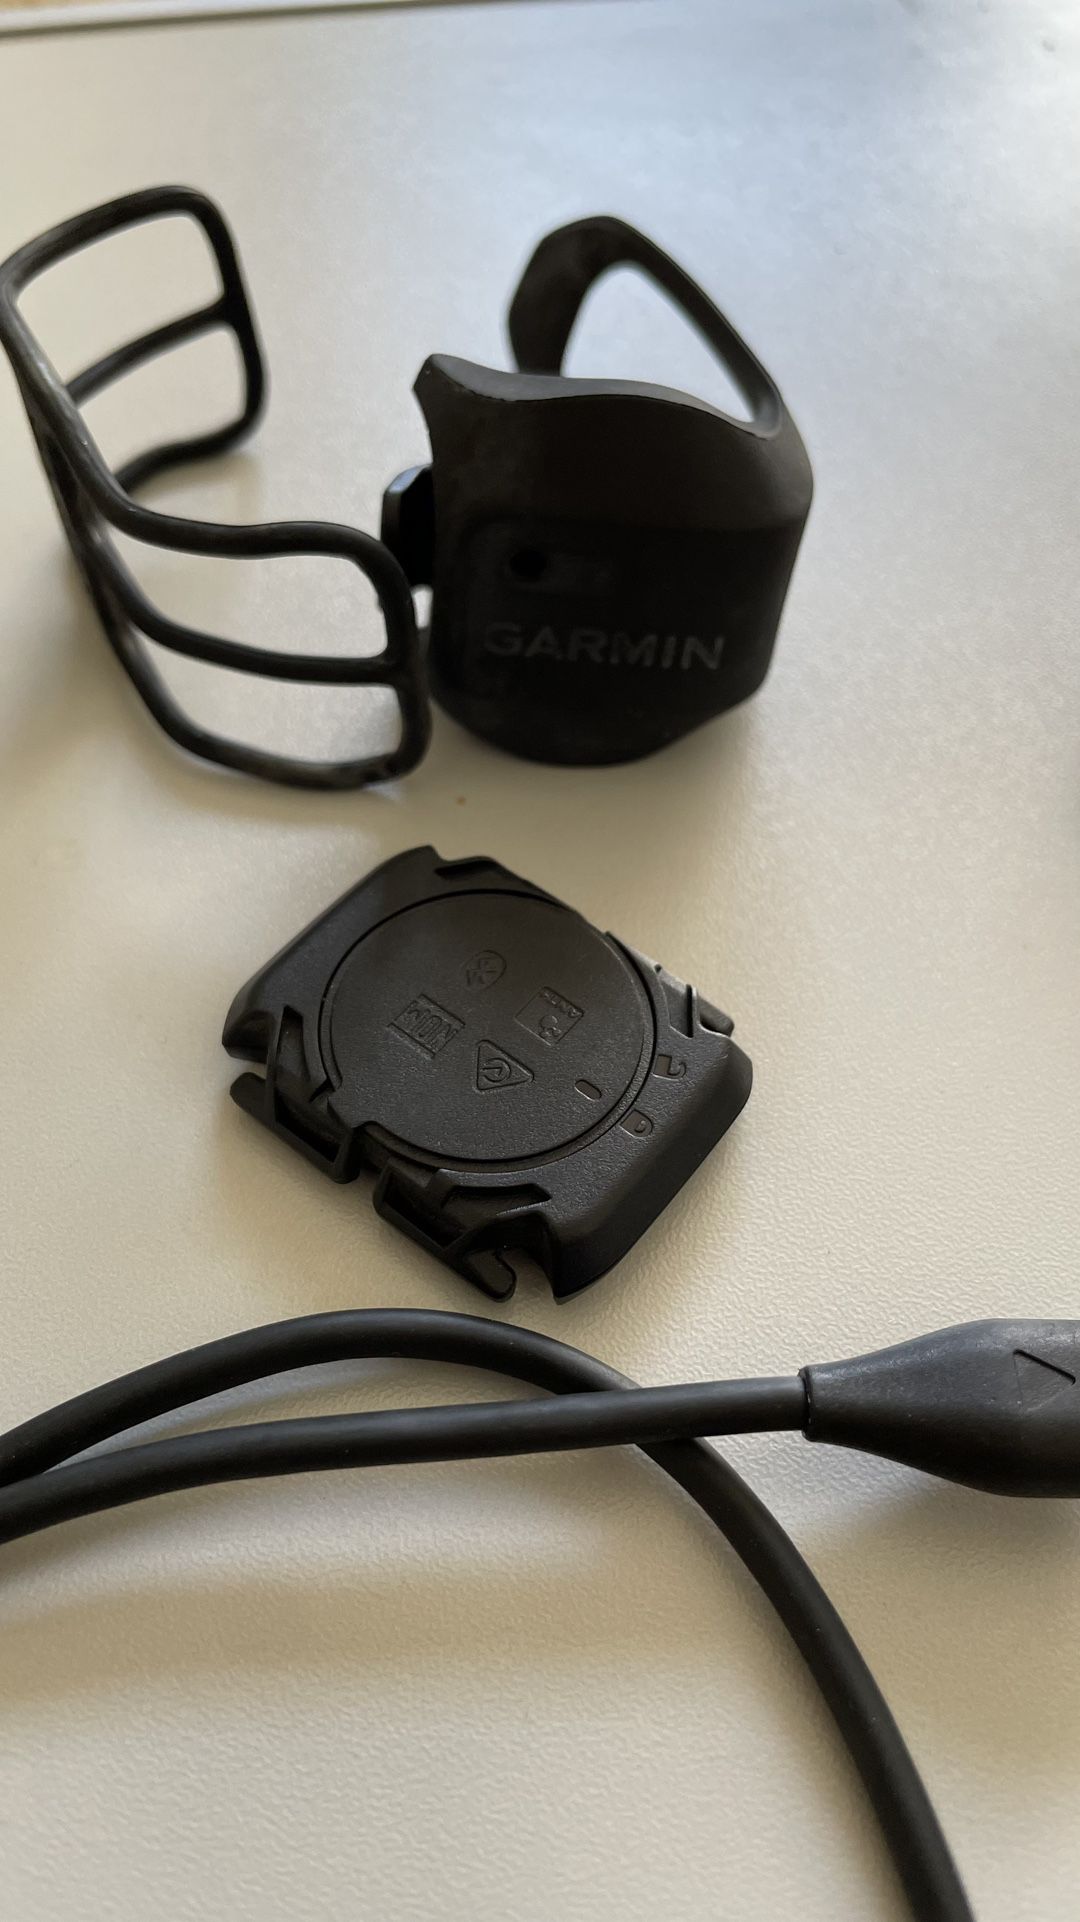 Garmin forerunner 935 & Bike Speed Sensor 2 and Cadence Sensor 2 